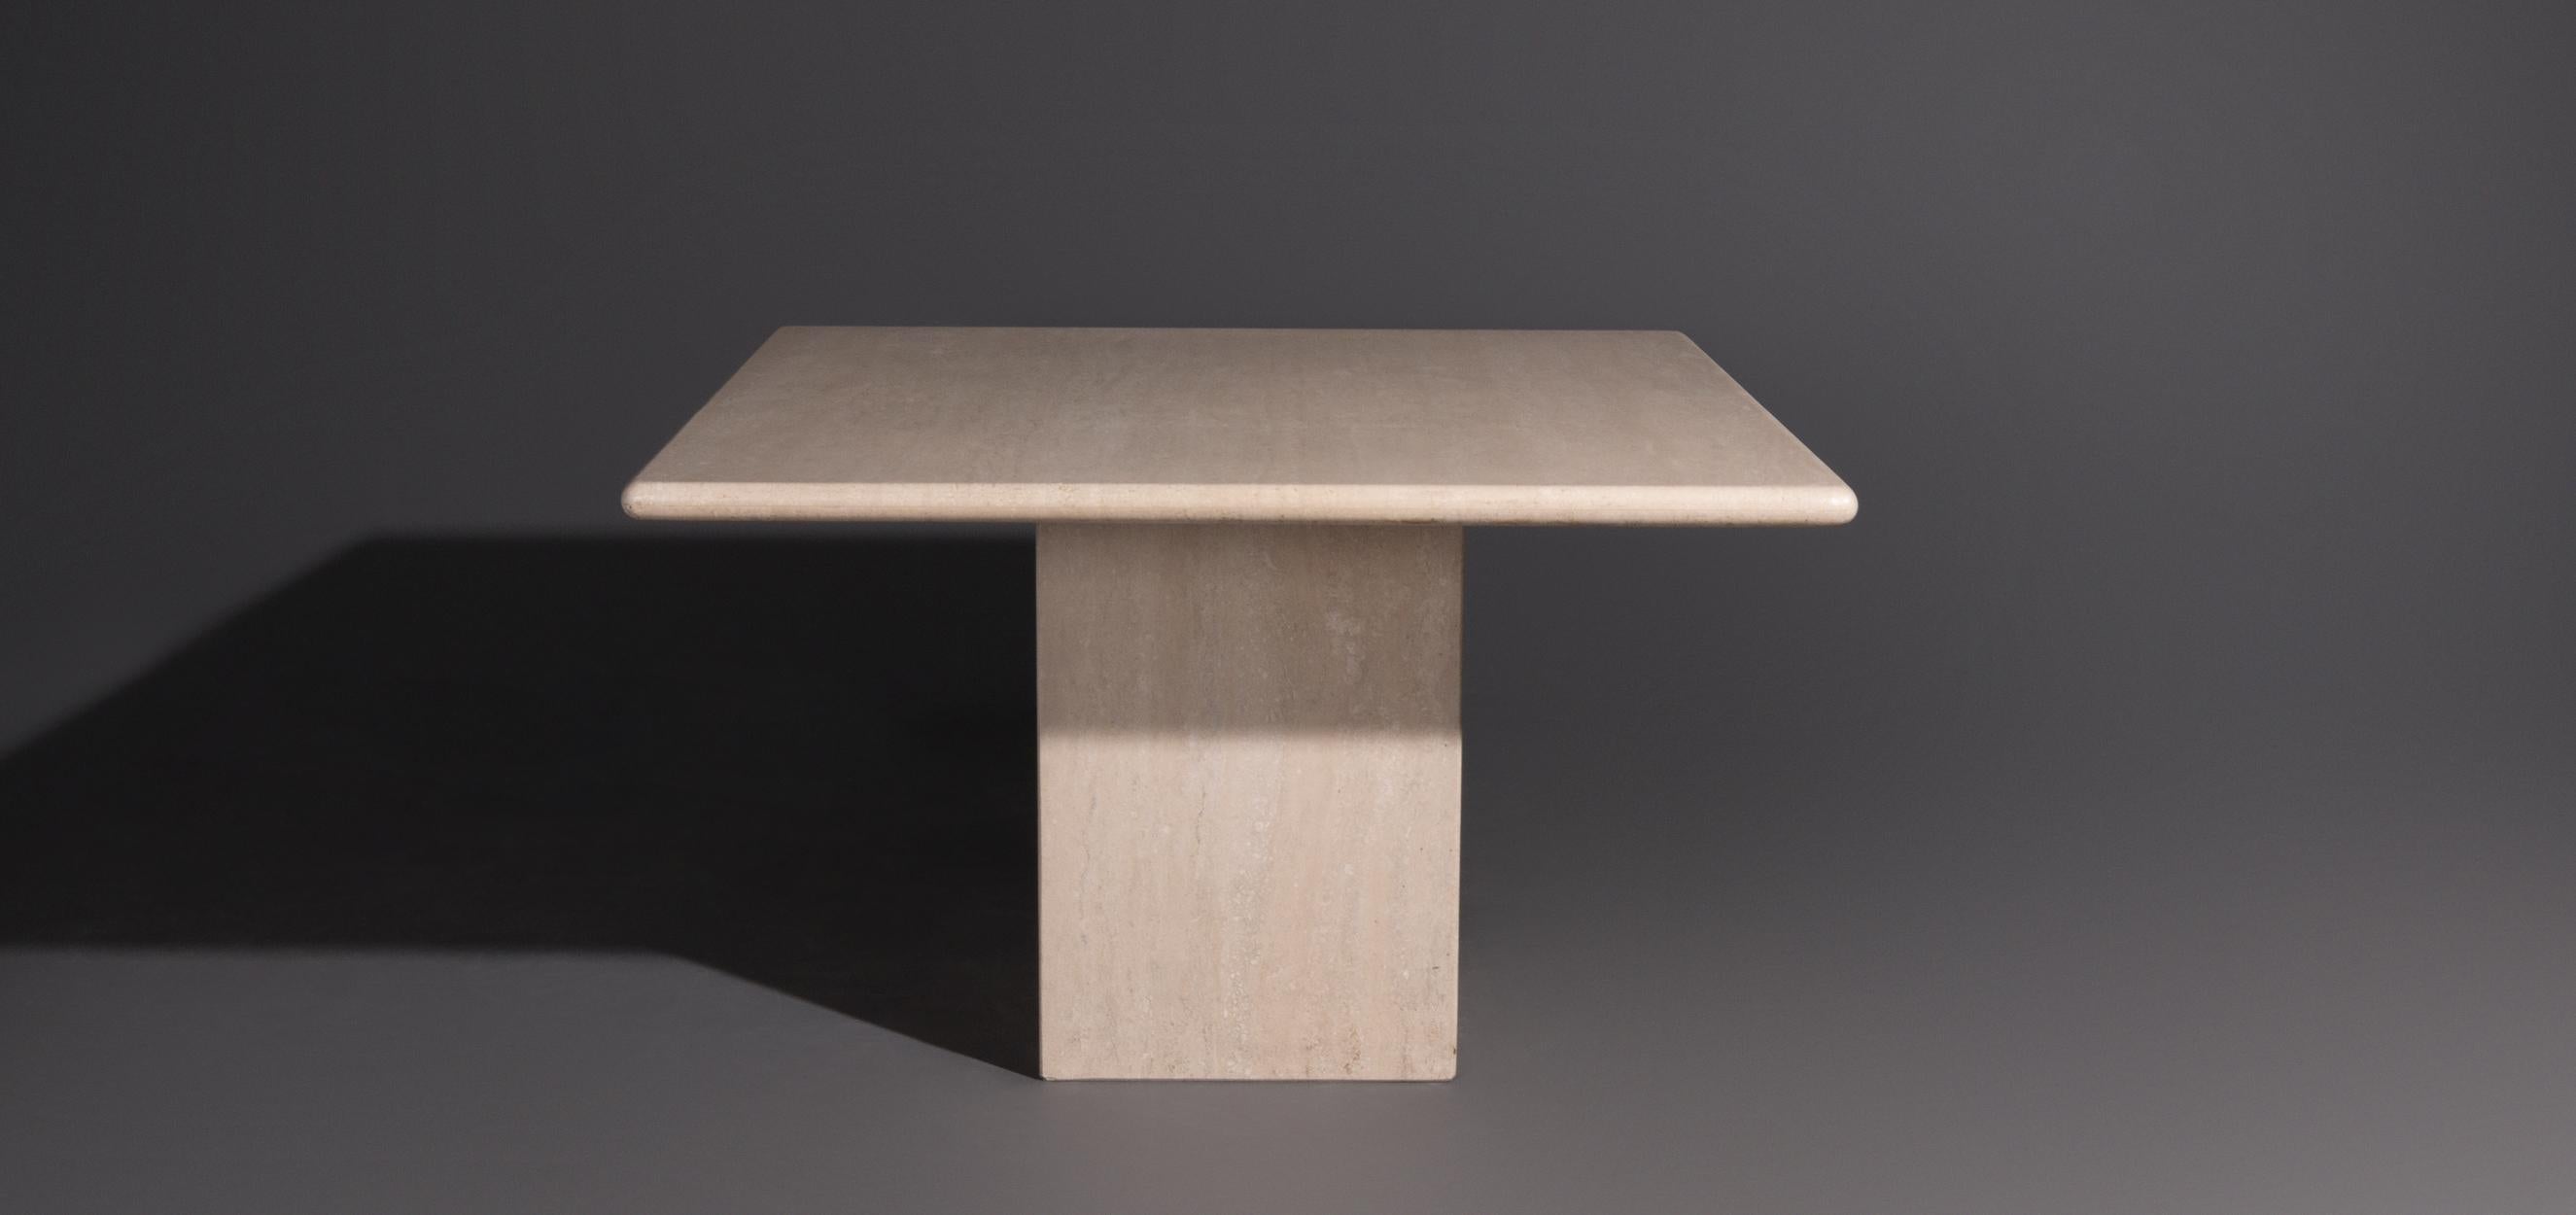 Esstisch aus Travertin mit quadratischer Platte. Dieser Esszimmertisch hat eine Platte mit abgerundeten Kanten. Der Tisch ist aus Travertin, einem Naturstein mit einer schönen Zeichnung, gefertigt. Der Travertin hat eine beige Farbe. Das Bein ist